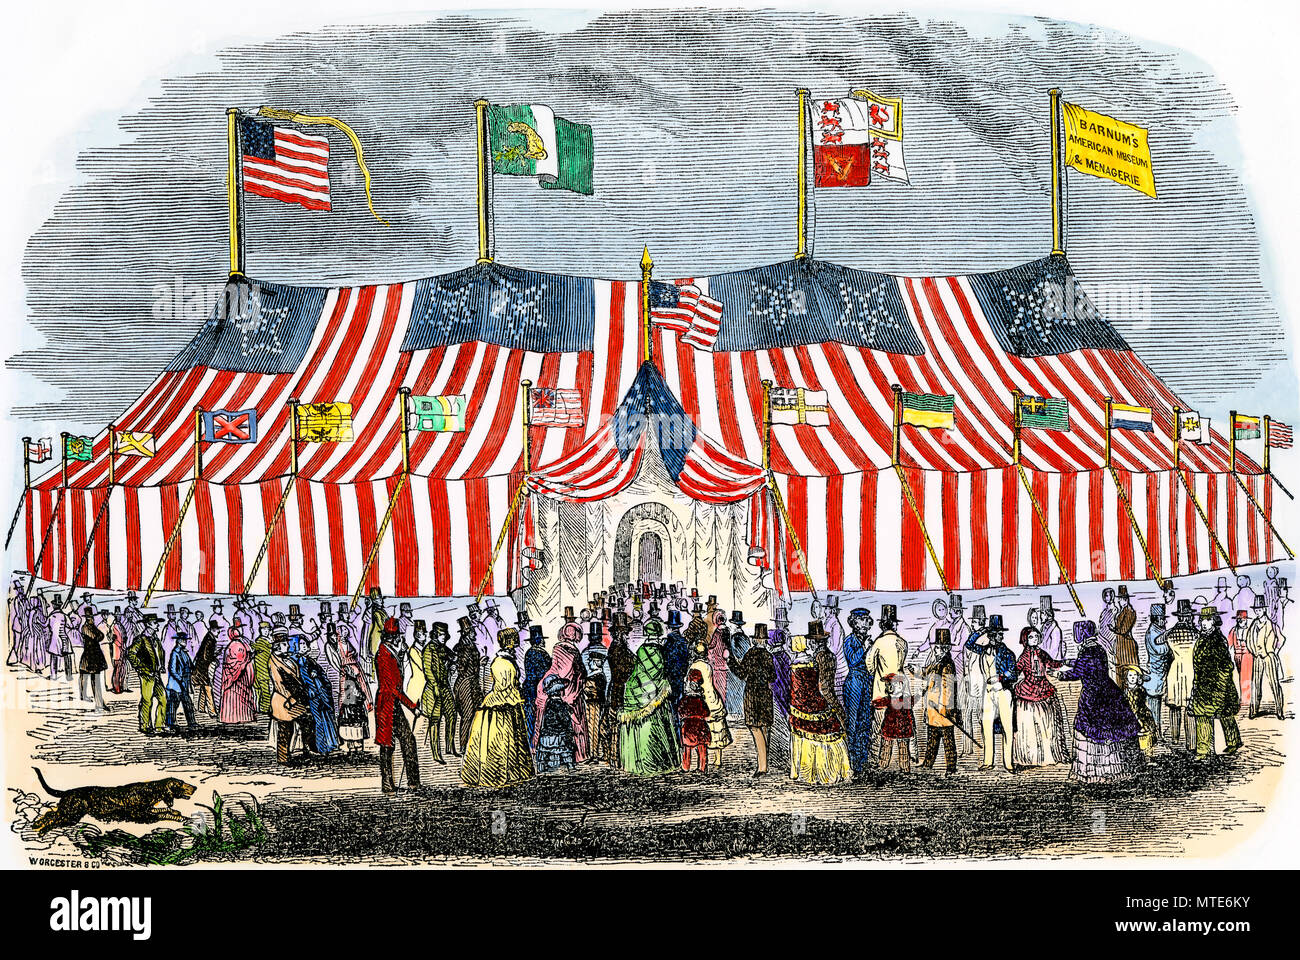 Enorme tenda del P.T. Il Barnum American Museum e il serraglio, 1850s. Colorate a mano la xilografia Foto Stock